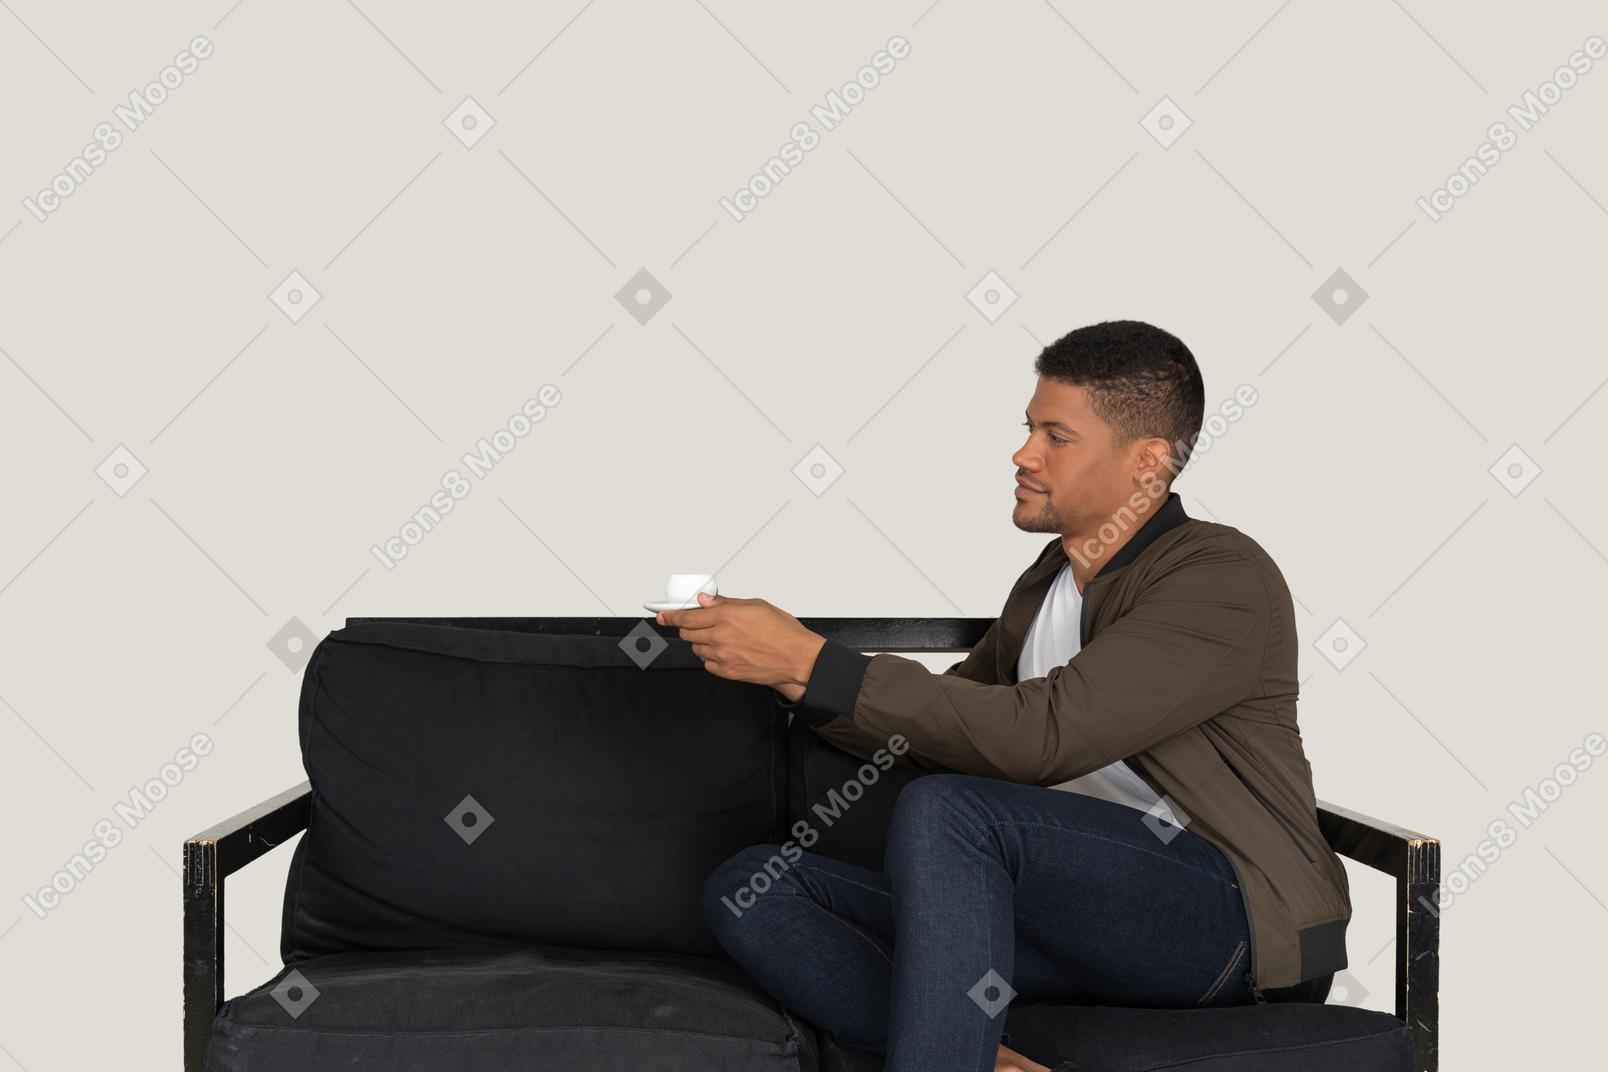 Vue de trois quarts d'un jeune homme rêveur assis sur un canapé avec une tasse de café